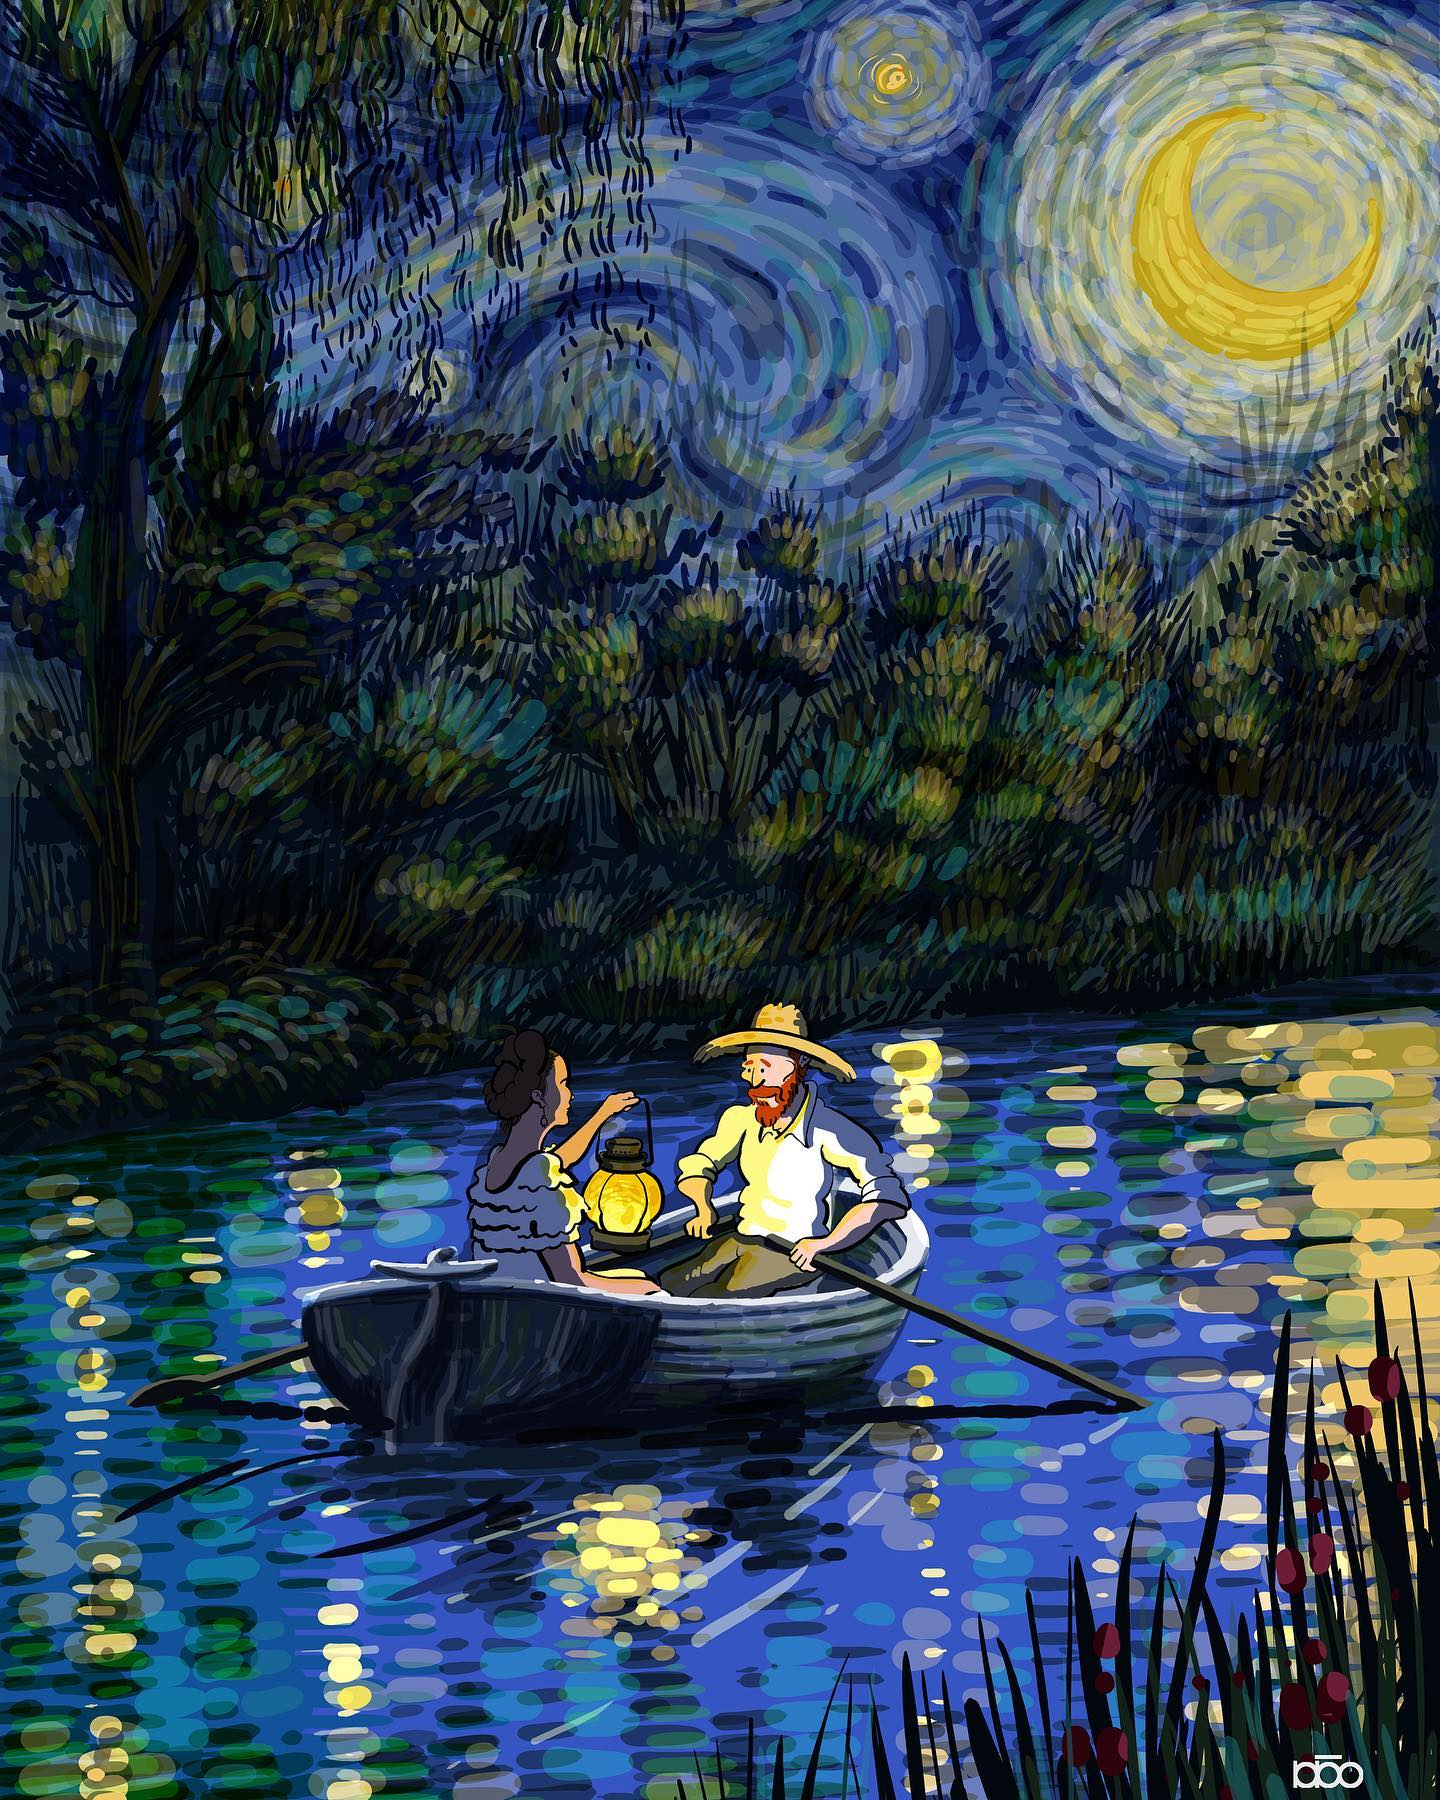 Nghệ sĩ họa sĩ Van Gogh là một trong những nghệ sĩ lớn nhất của thế giới. Tác phẩm của ông đã ảnh hưởng sâu sắc đến ngành nghệ thuật. Hãy khám phá những bức tranh nổi tiếng nhất của Van Gogh và tìm hiểu về cuộc đời và sự nghiệp của ông. Hầu hết các tác phẩm của ông đều rất đẹp và đầy cảm xúc.